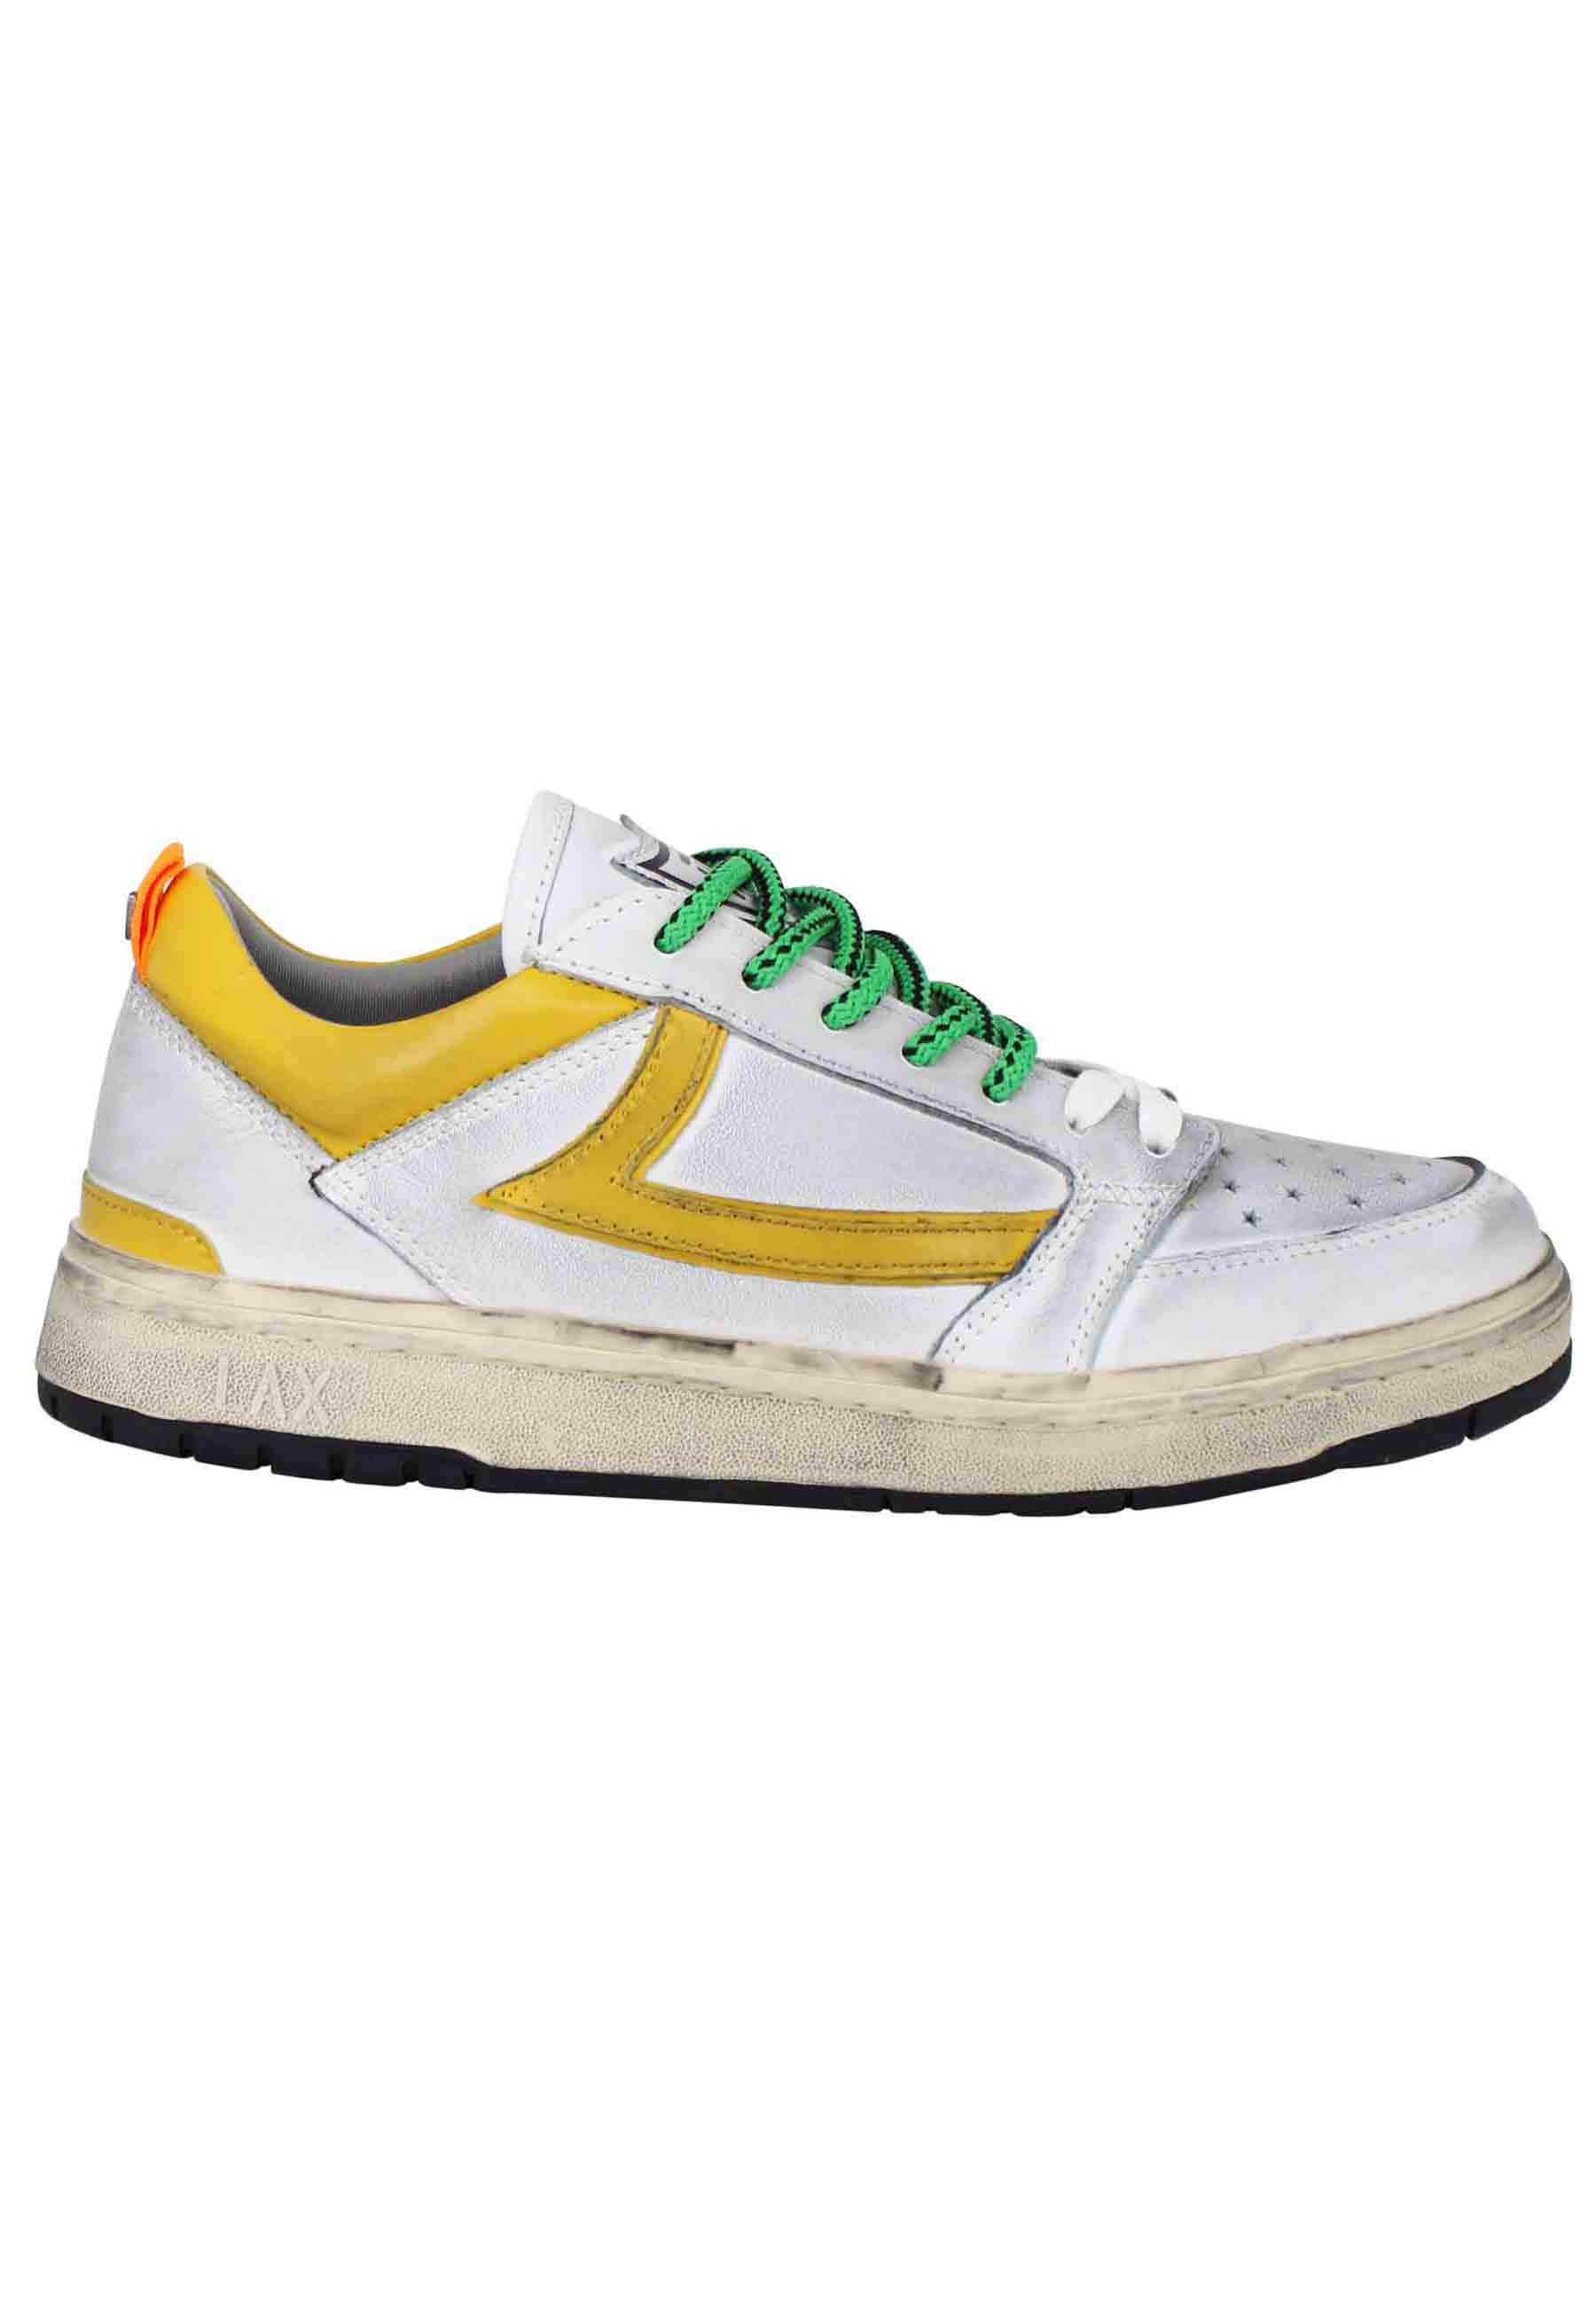 Sneakers uomo Starlight Vintage in pelle bianca con riporti in pelle giallo